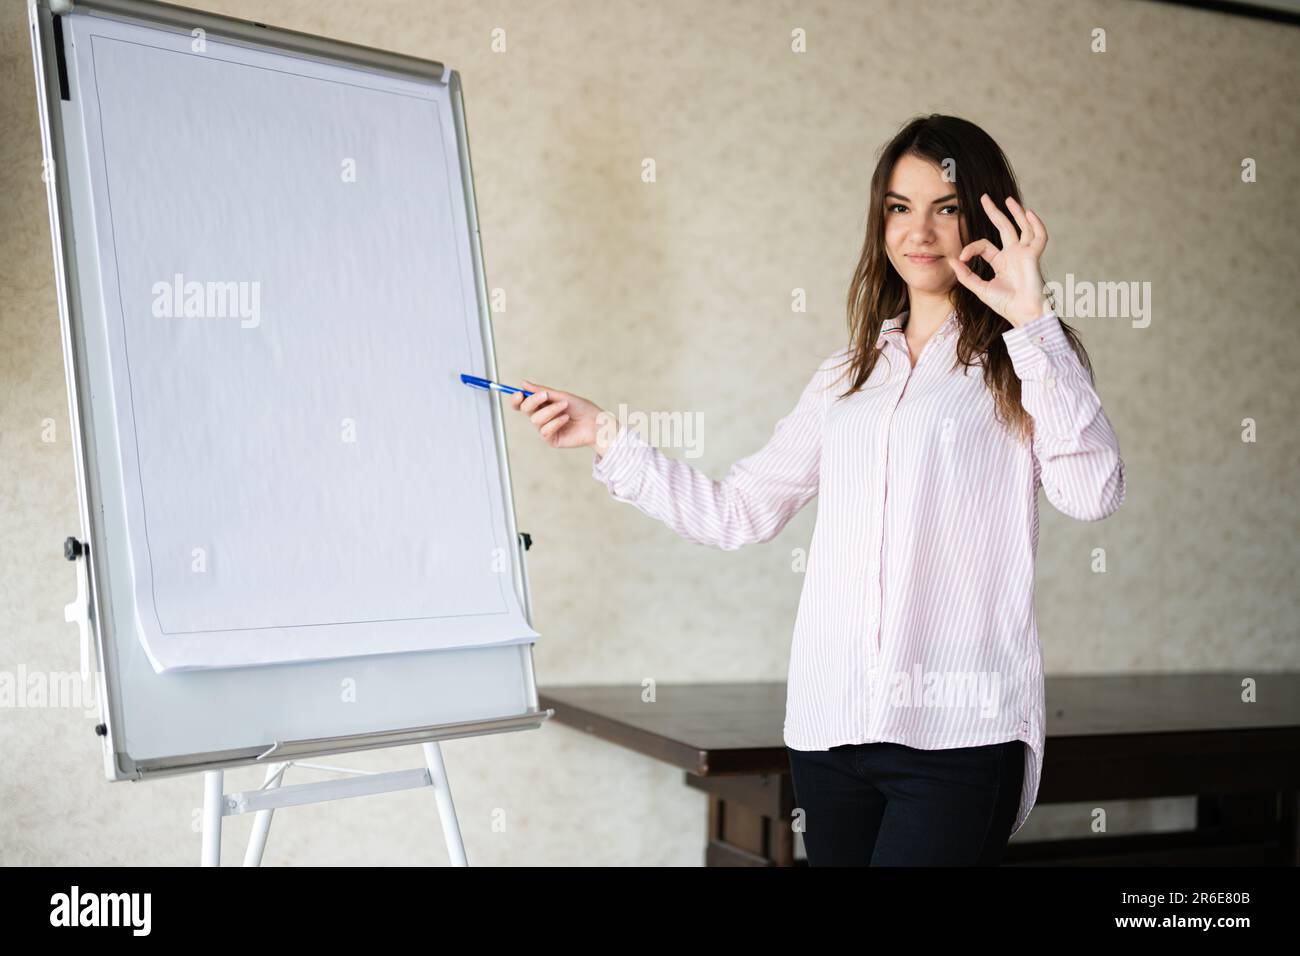 Giovane donna parlante caucasica coach show su lavagna bianca, OK segno. Il team leader femminile approva le idee di progetto. Foto Stock